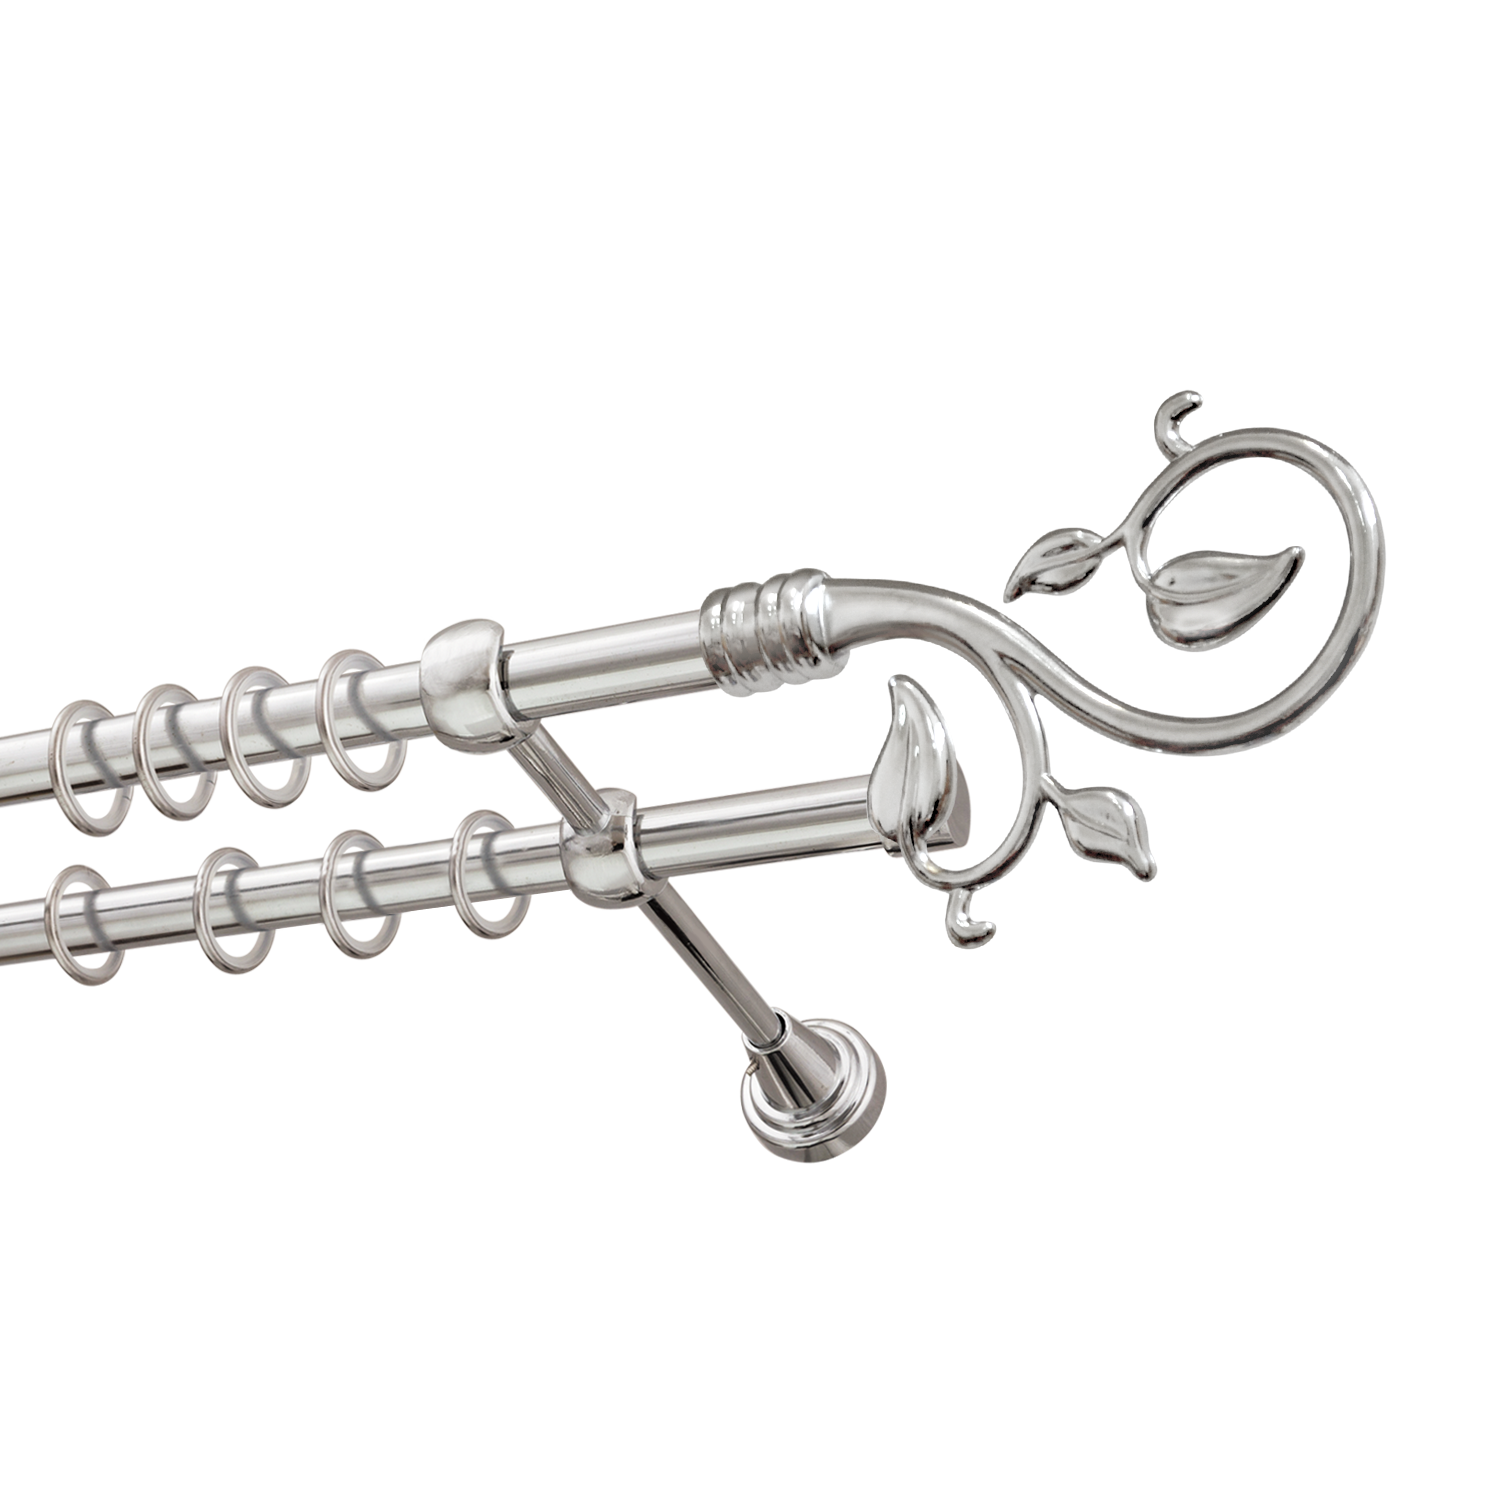 Металлический карниз для штор Амели, двухрядный 16/16 мм, серебро, гладкая штанга, длина 240 см - фото Wikidecor.ru